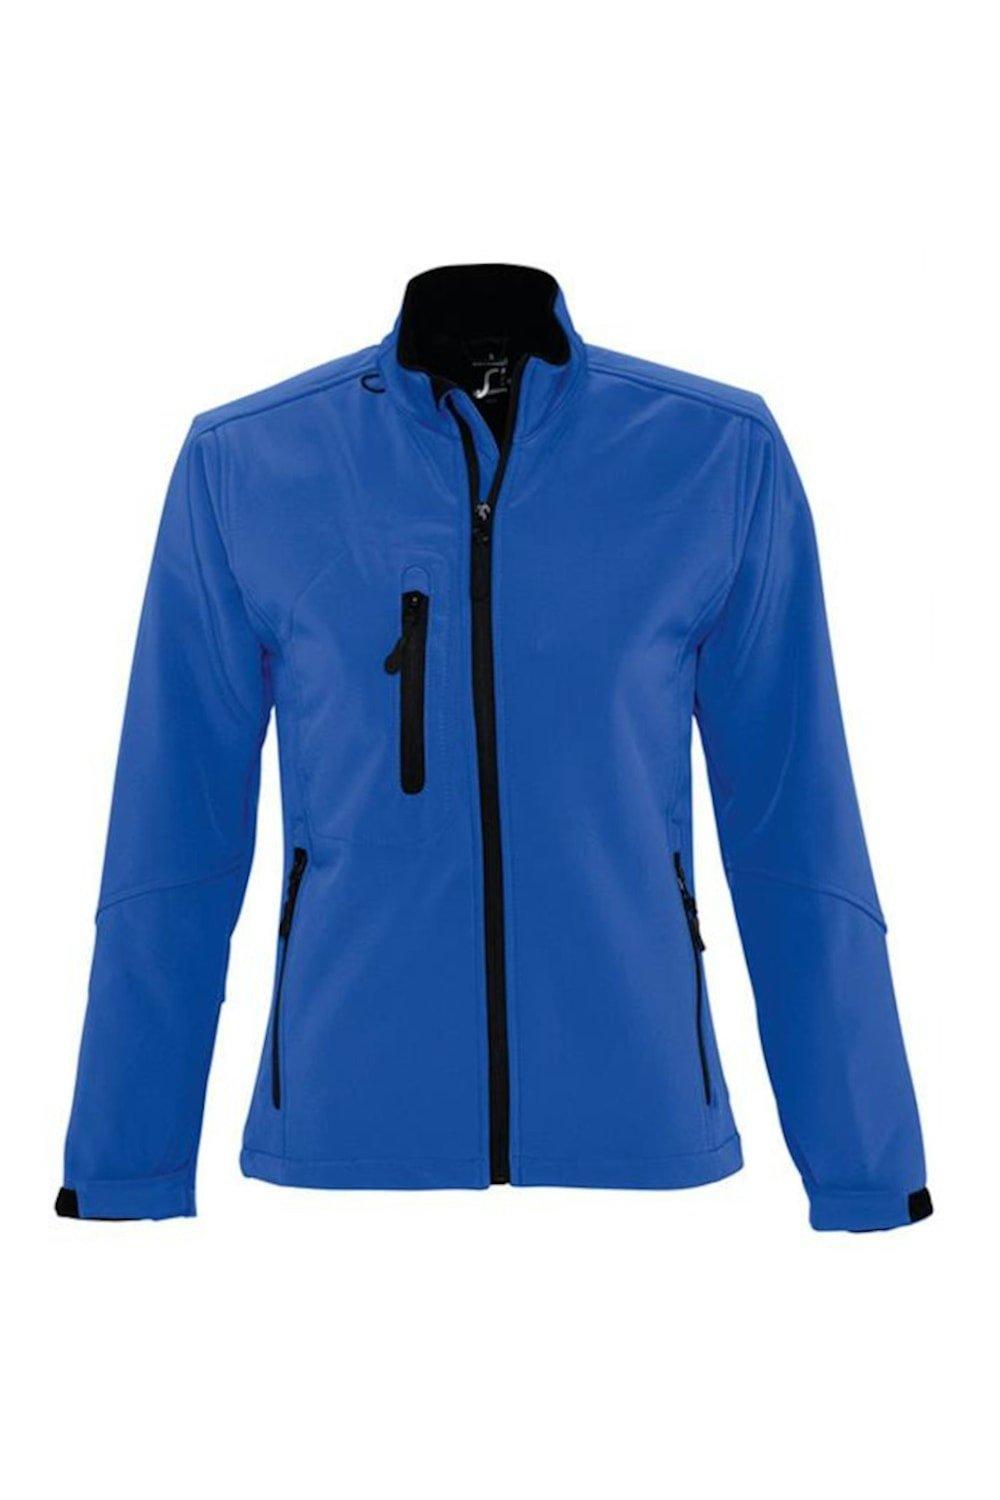 Куртка Roxy Soft Shell (дышащая, ветрозащитная и водостойкая) SOL'S, синий